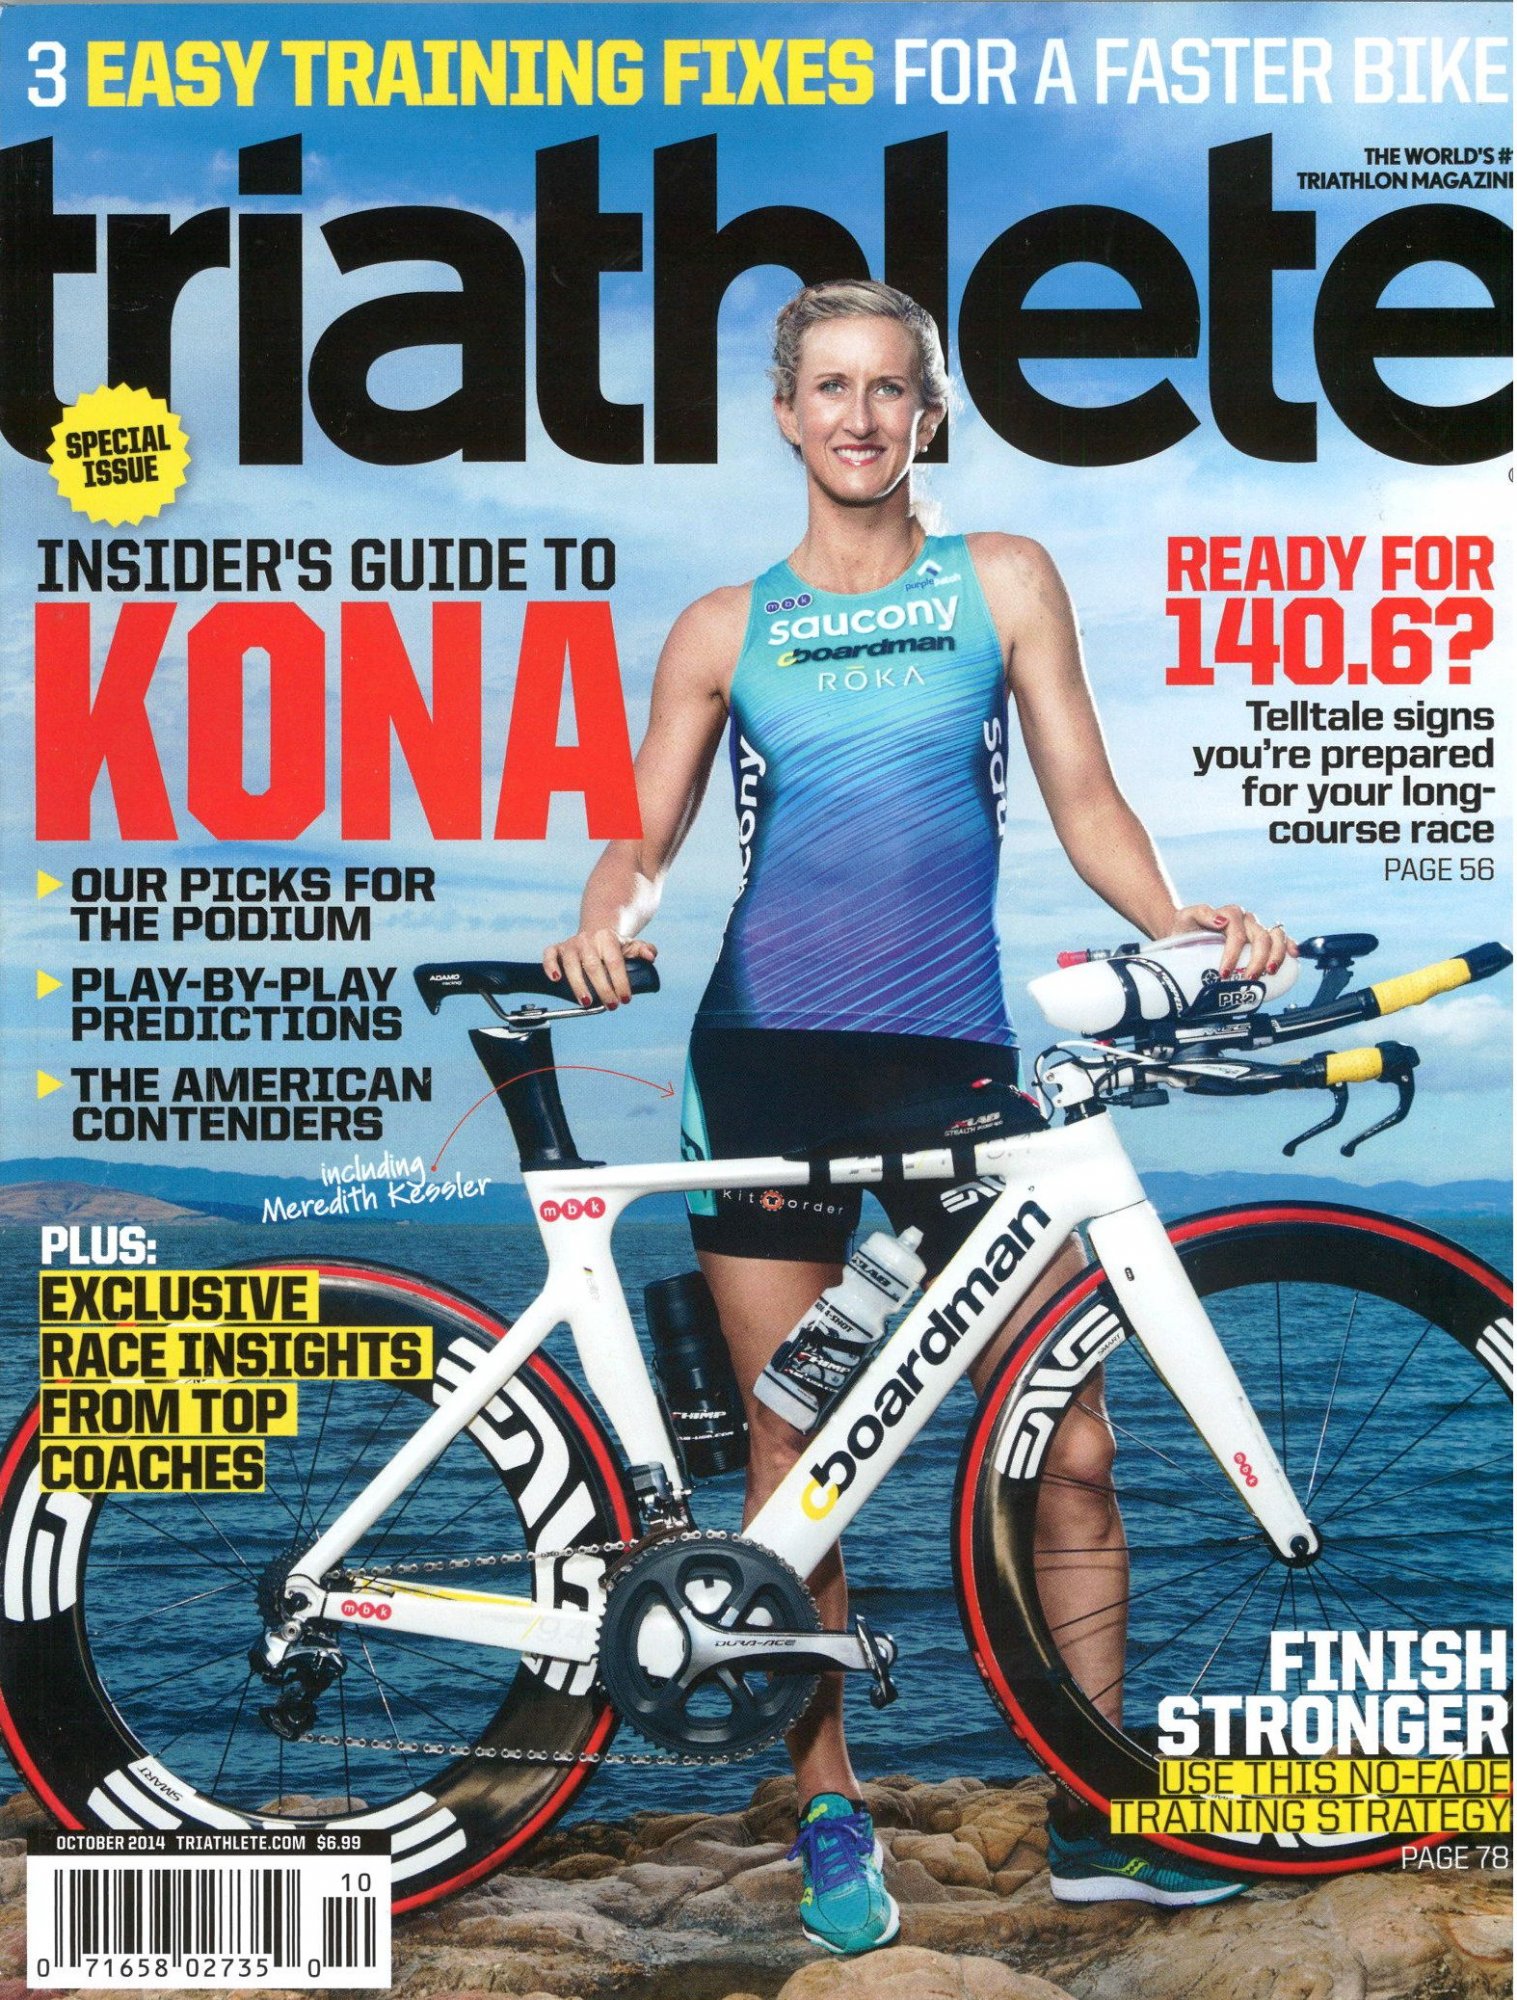 October 2014 Triathlete Cover